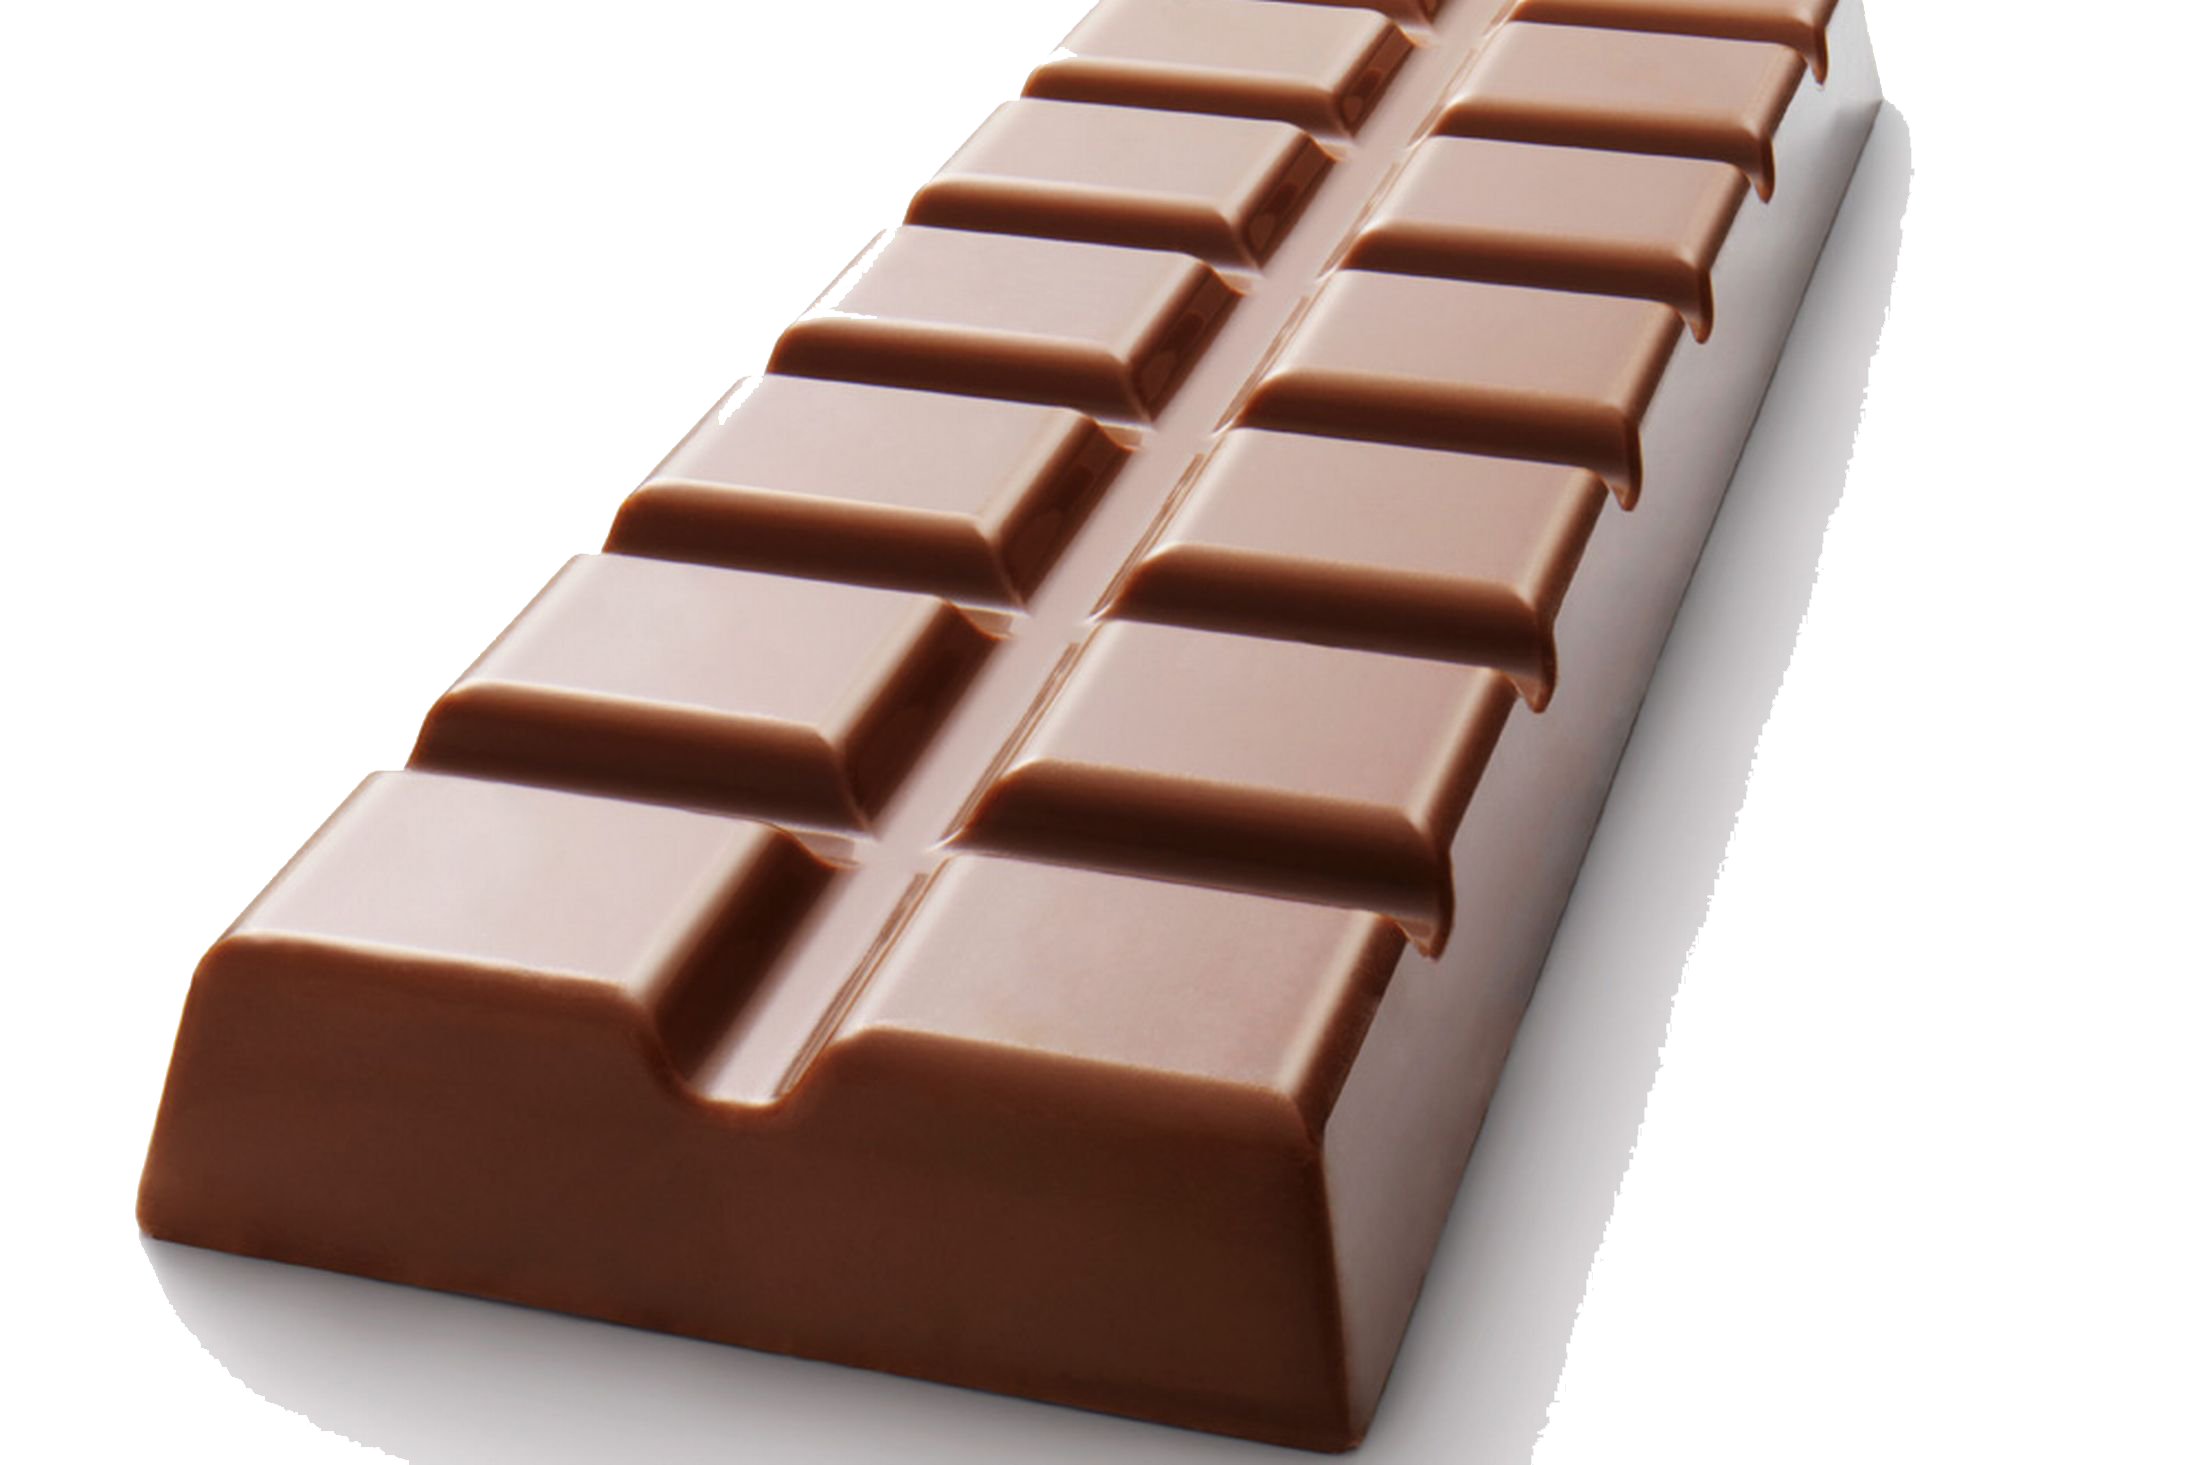 Bar of chocolate. Плитка шоколада. Шоколадная плитка. Молочный шоколад. Плитка шоколада на прозрачном фоне.